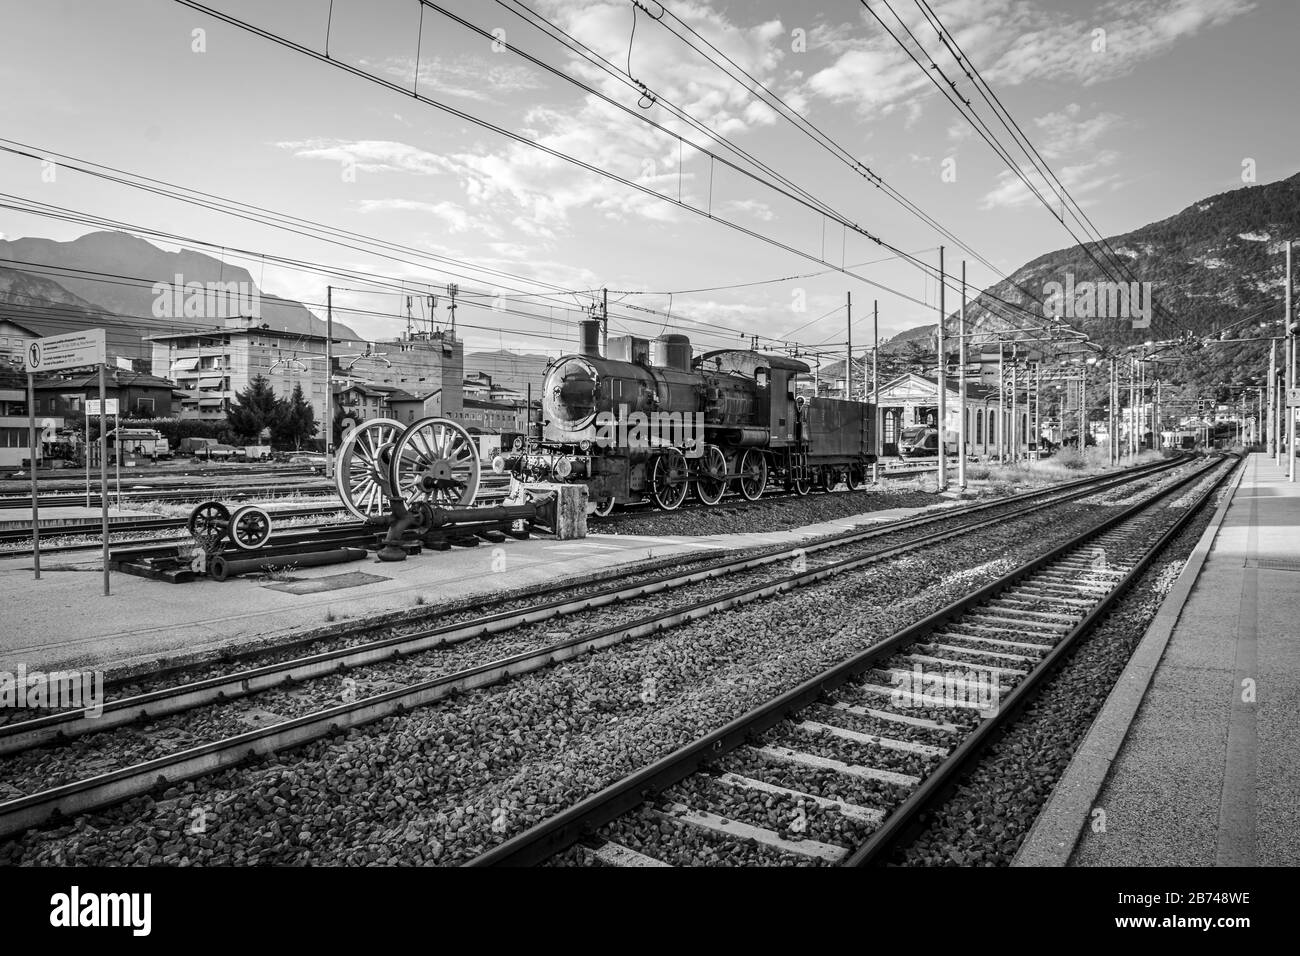 Vecchia locomotiva (motore a vapore) in mostra alla stazione ferroviaria di Trento in Trentino Alto Adige. Trento, Italia - 19 agosto 2018 Foto Stock